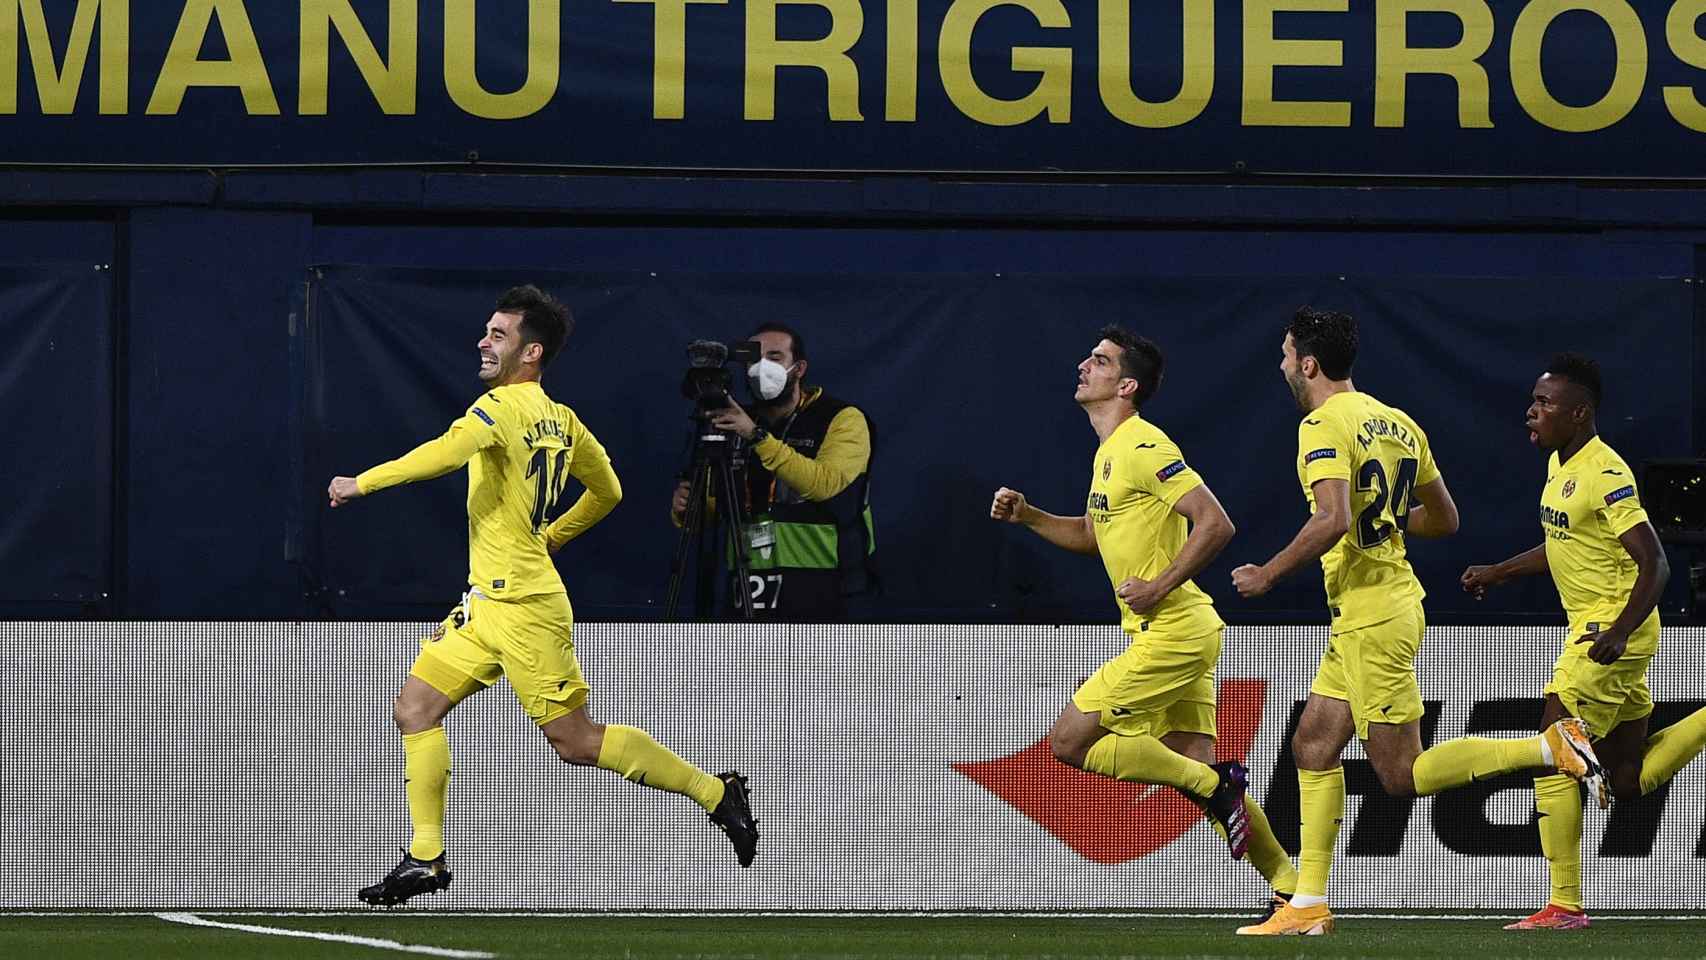 Manu Trigueros celebra su gol con el Villarreal ante el Arsenal en la Europa League